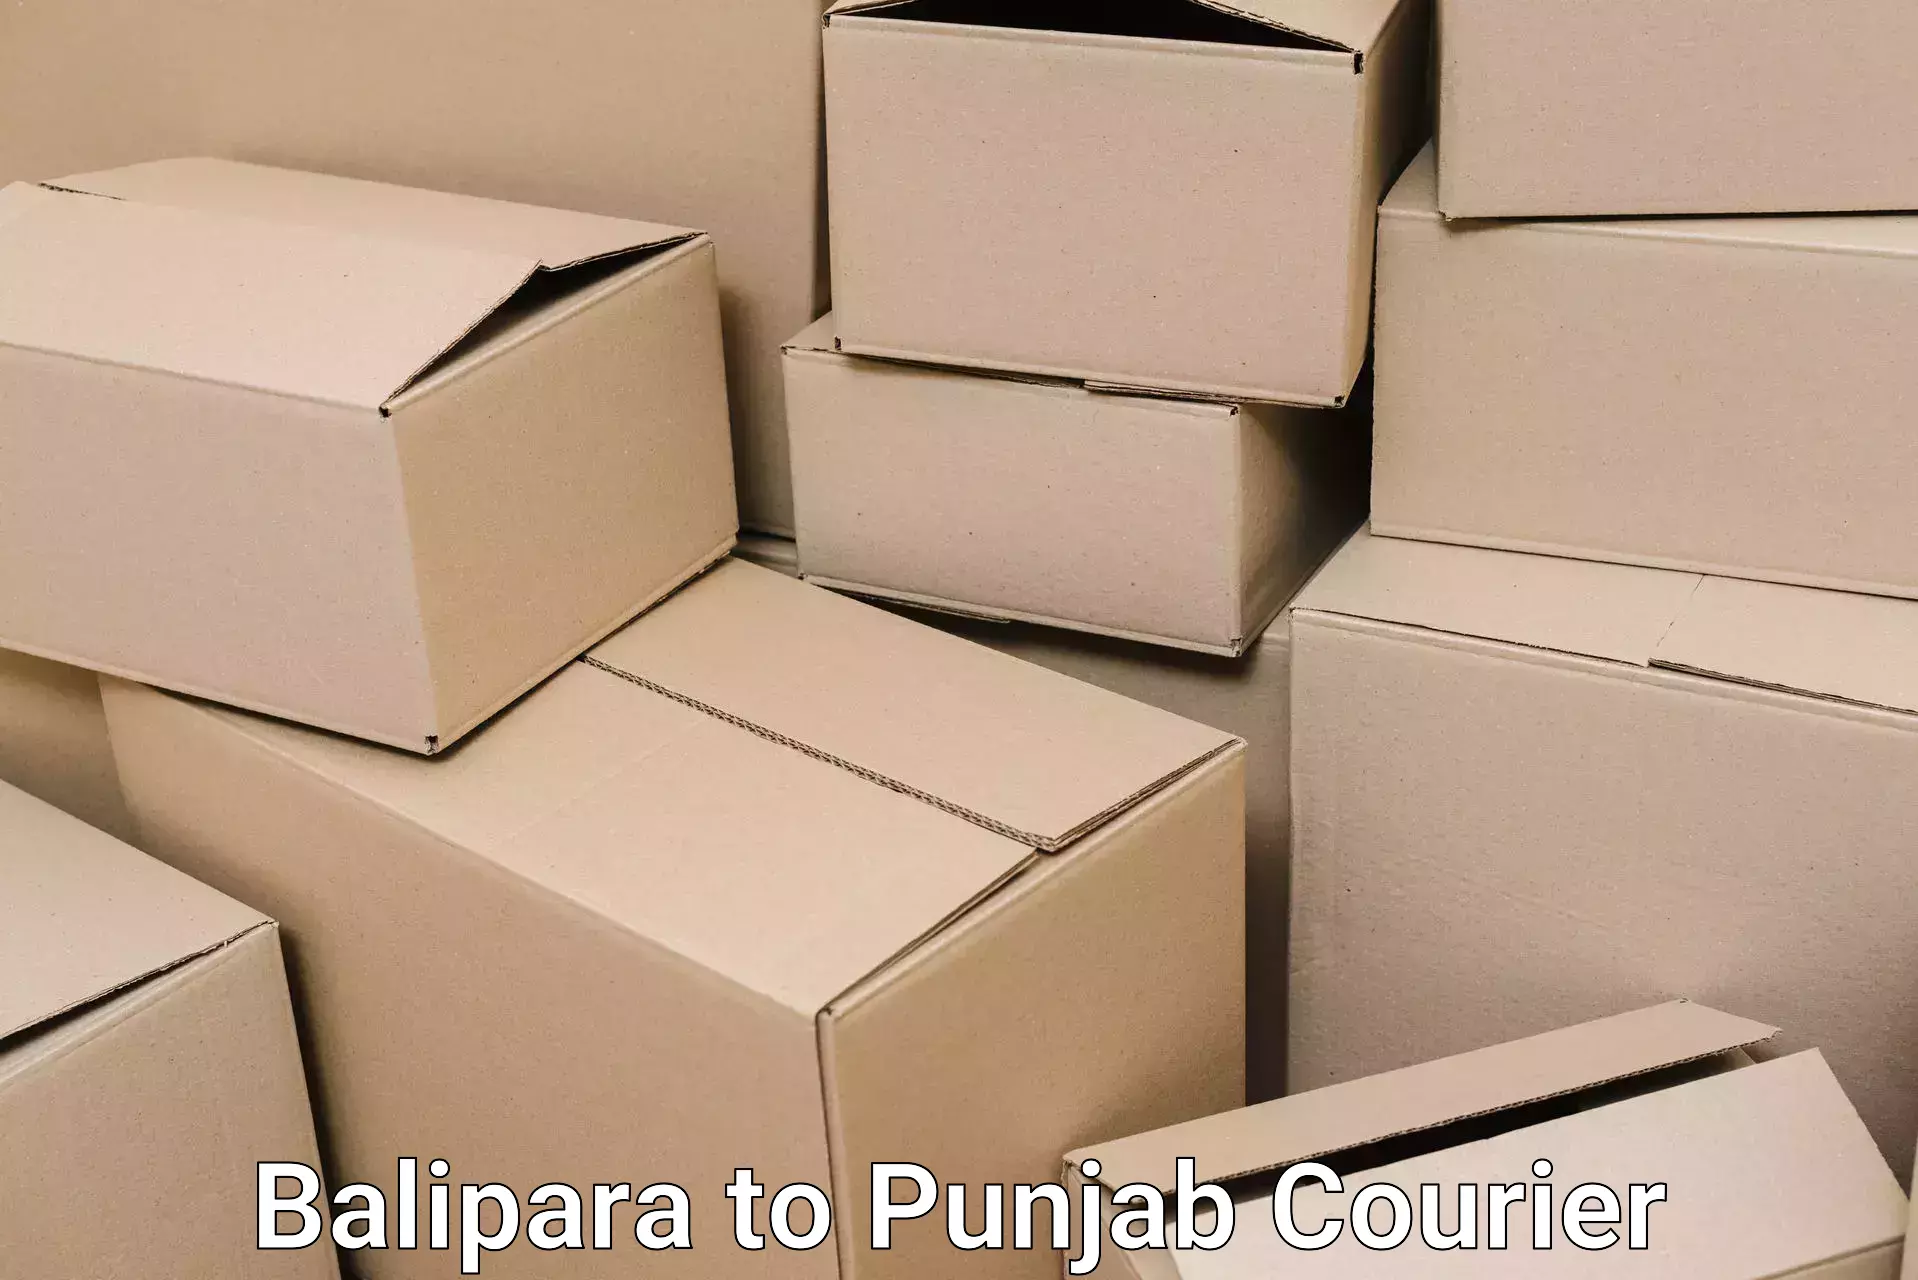 Furniture transport service Balipara to Ajnala